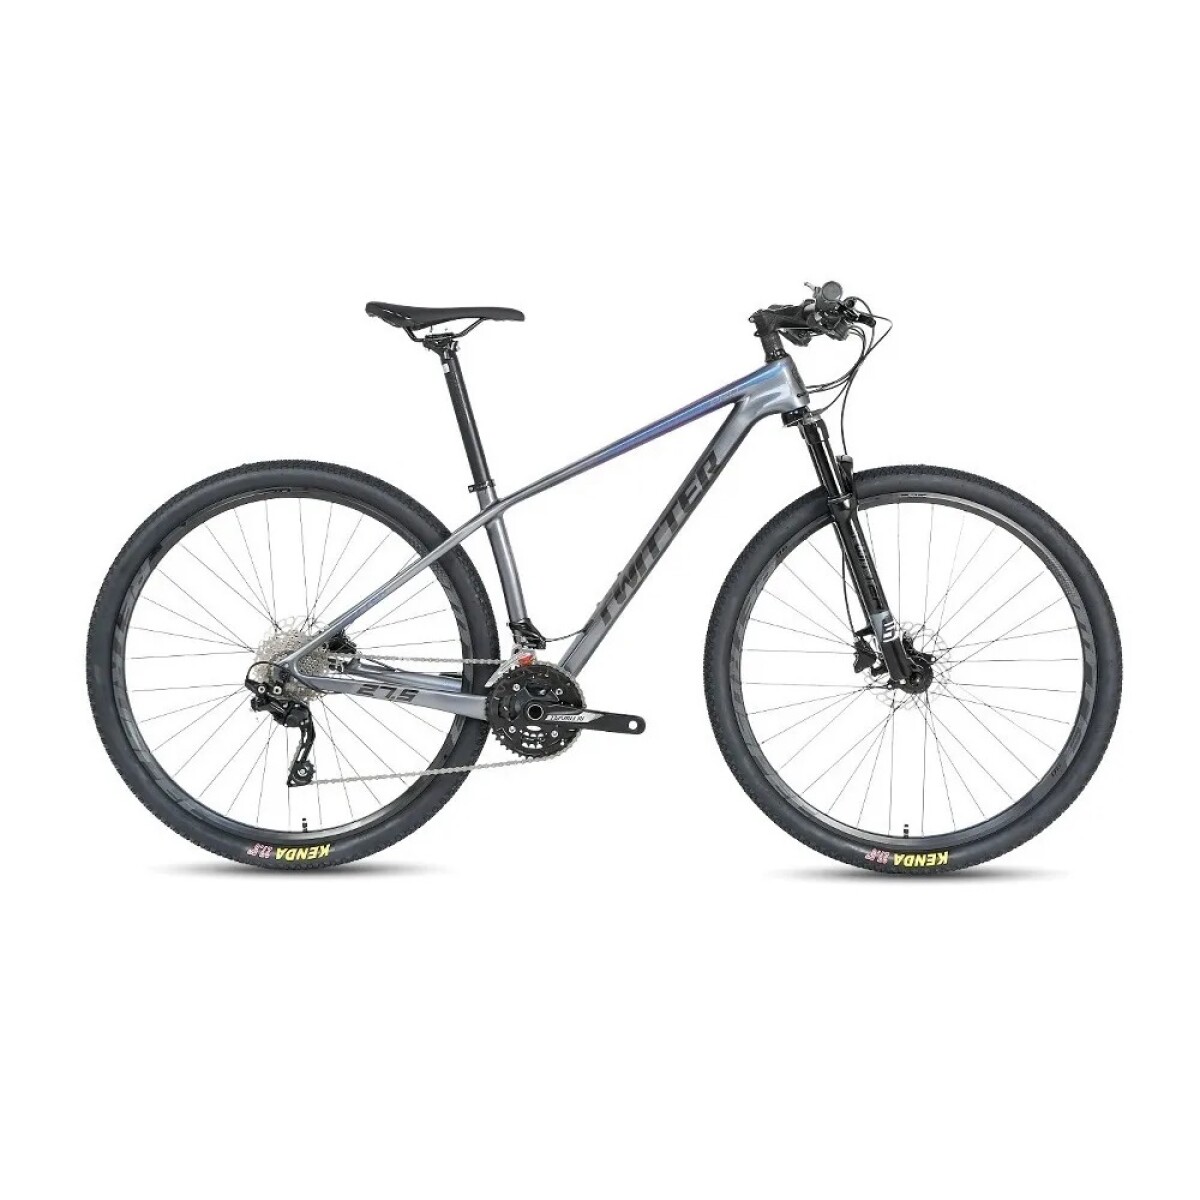 Bicicleta TWITTER Leopard-Rs Rodado 29 12S*2/T17 Carbono - Gris 